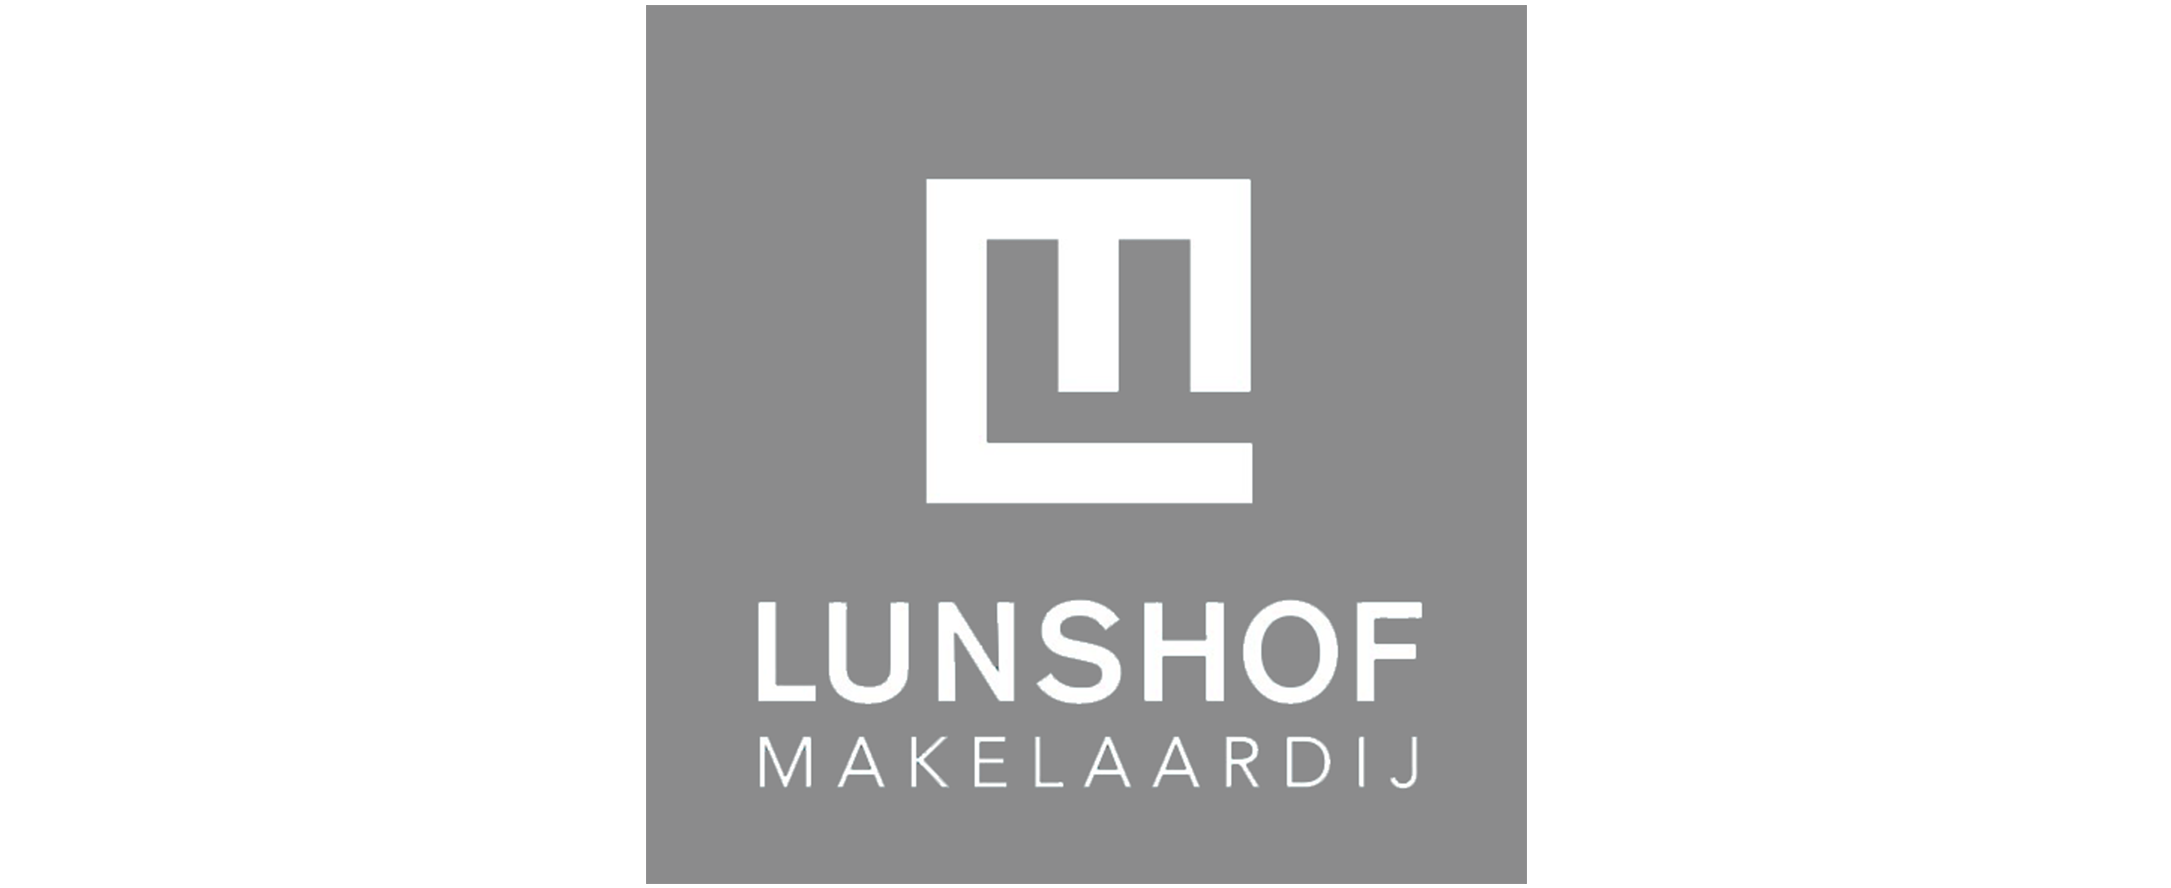 Lunshof logo